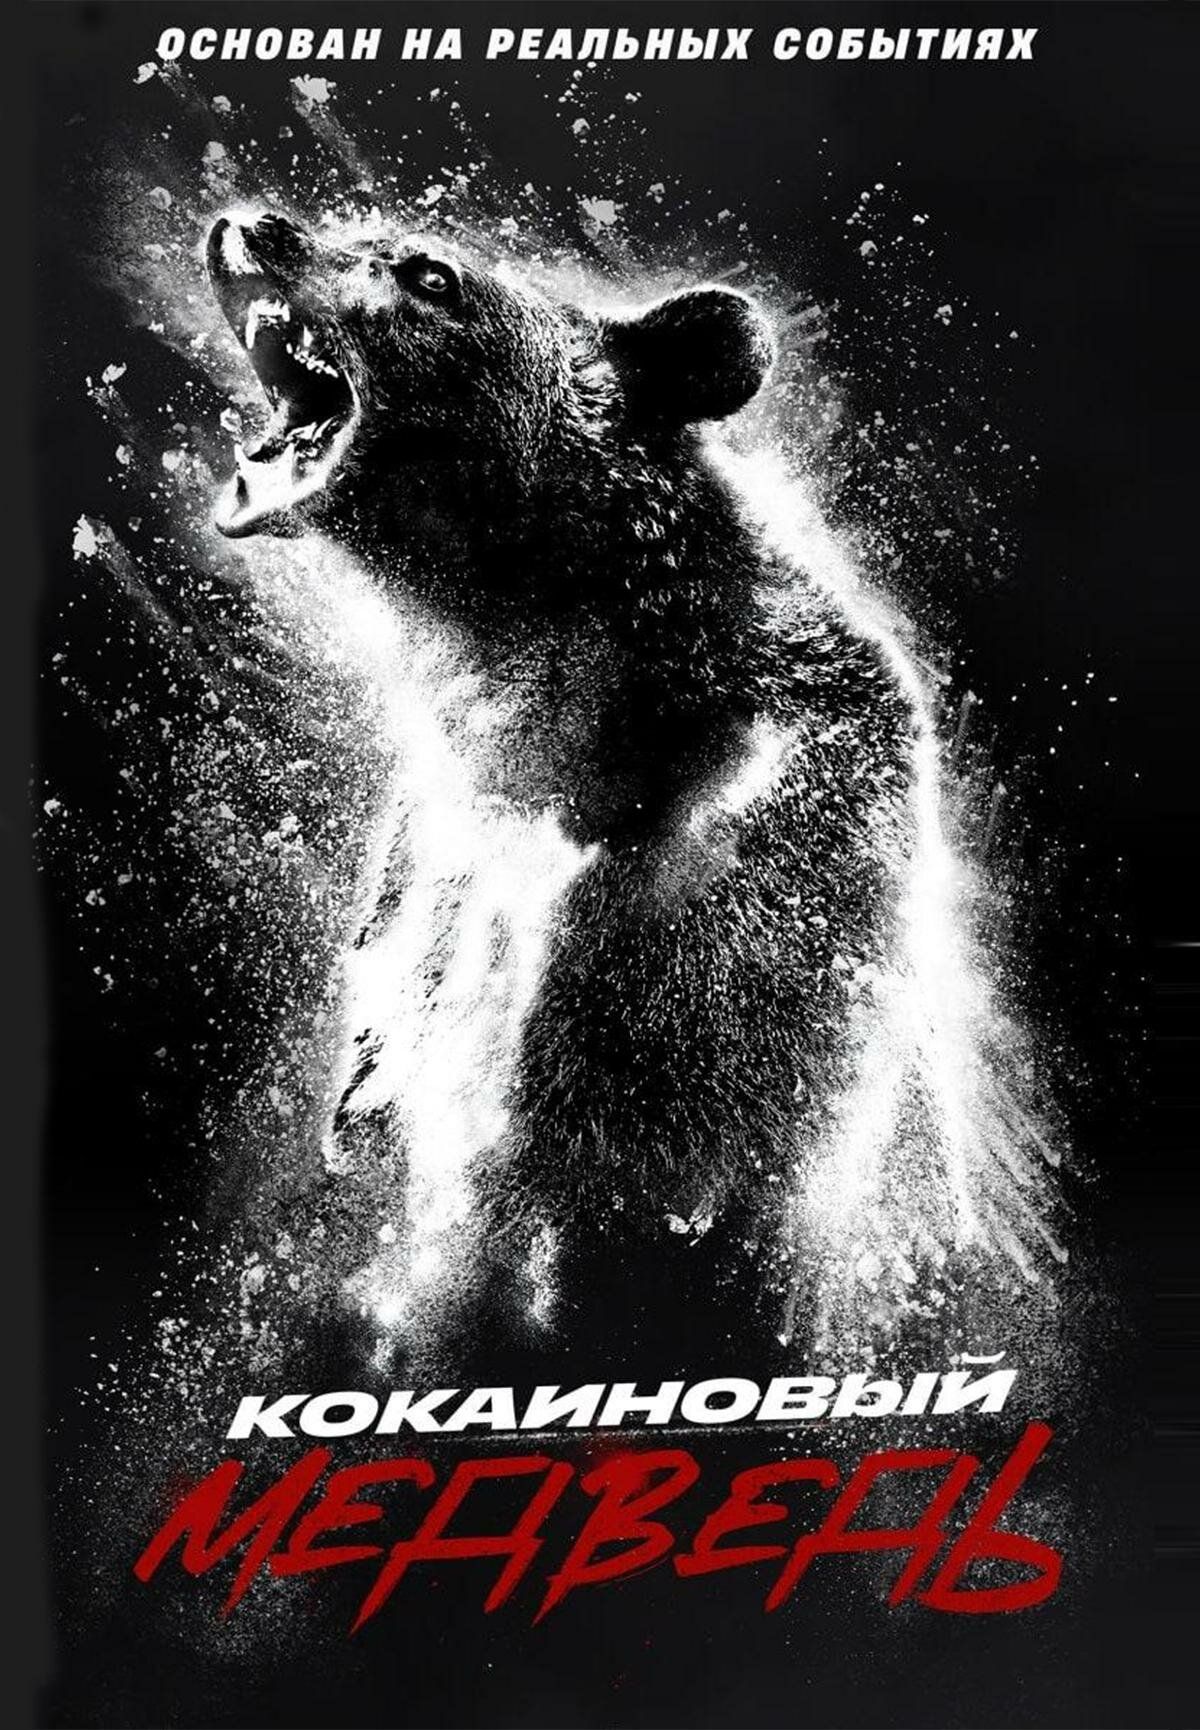 Постер к фильму Кокаиновый медведь / Cocaine Bear (2023) BDRip 1080p от селезень | D, P, A